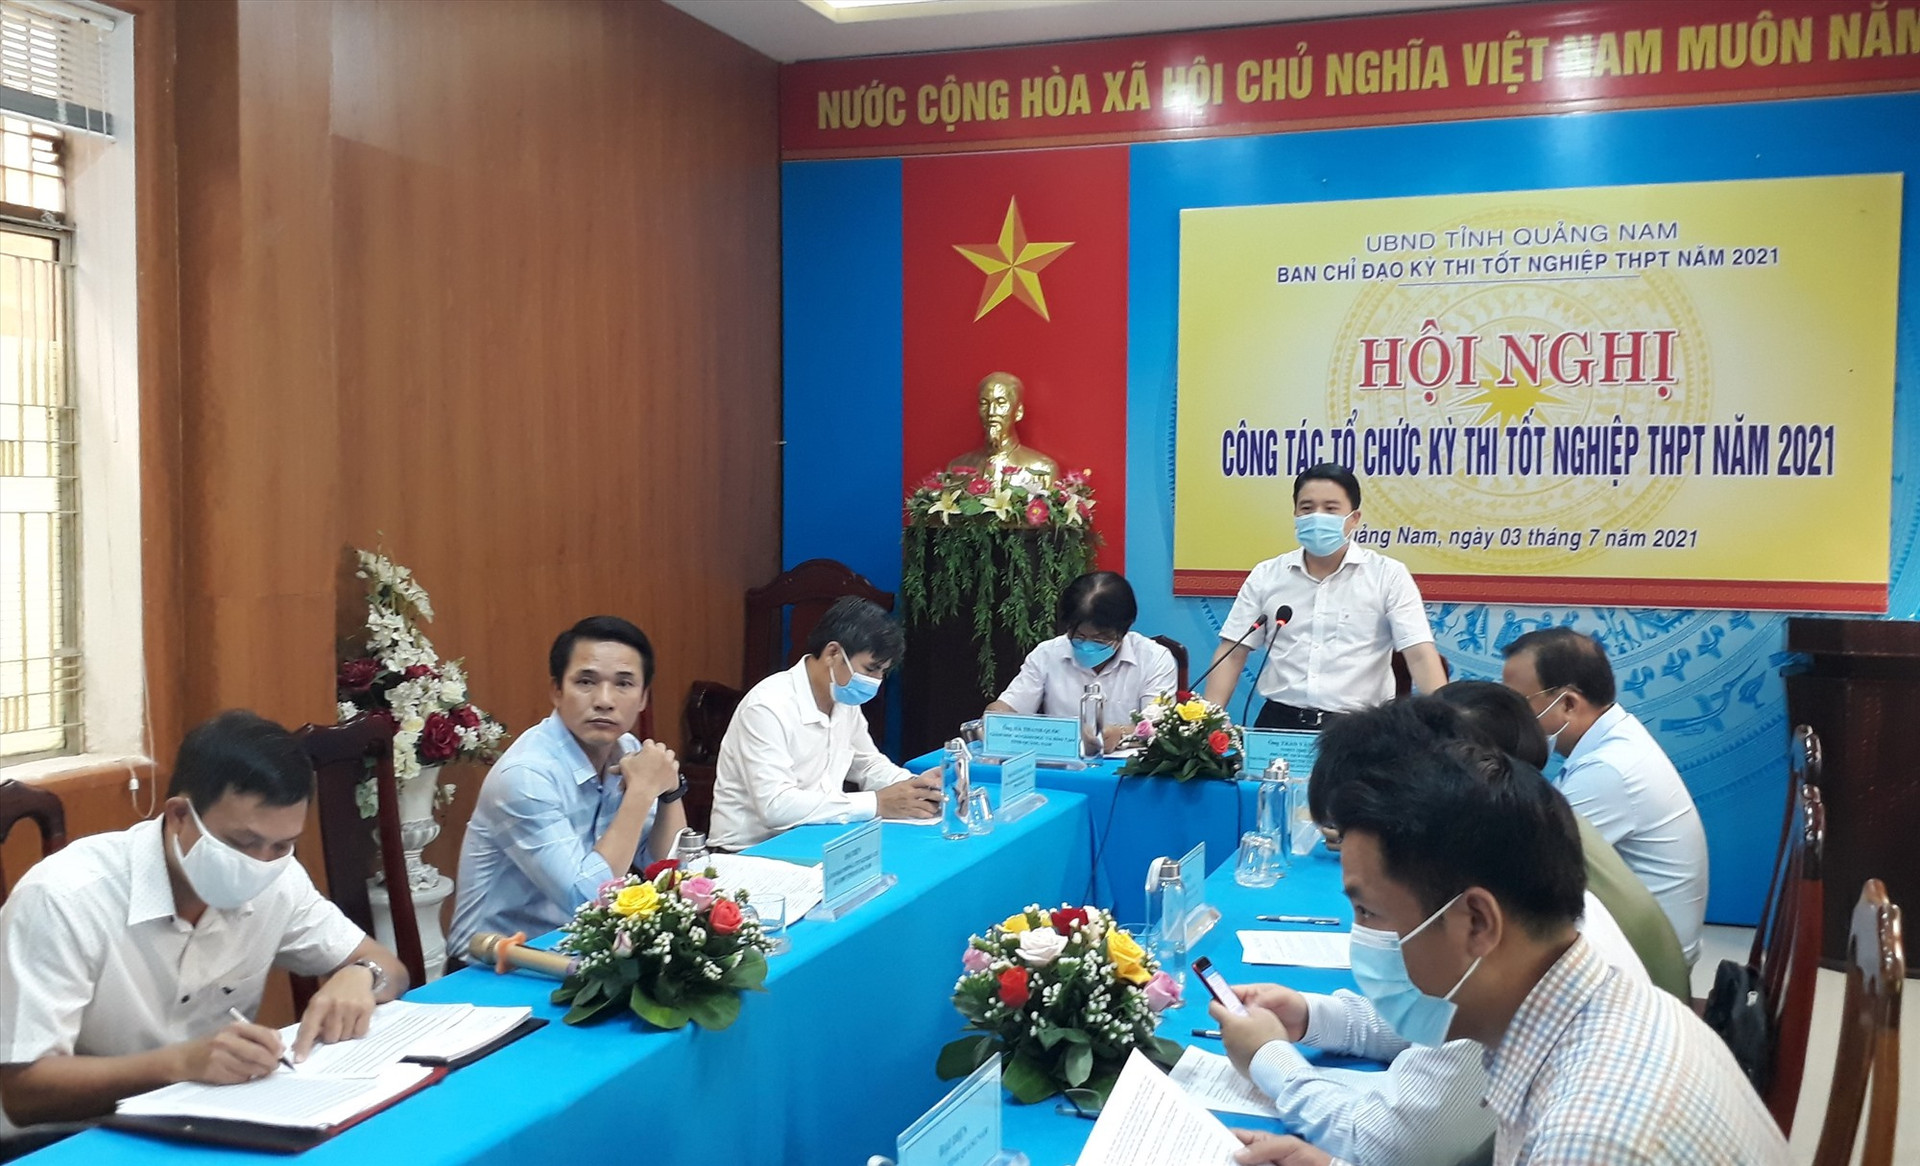 Phó Chủ tịch UBND tỉnh Trần Văn Tân - Trưởng Ban chỉ đạo yêu cầu công tác tổ chức thi phải đảm bảo nghiêm túc và an toàn phòng chống dịch. Ảnh: X.P